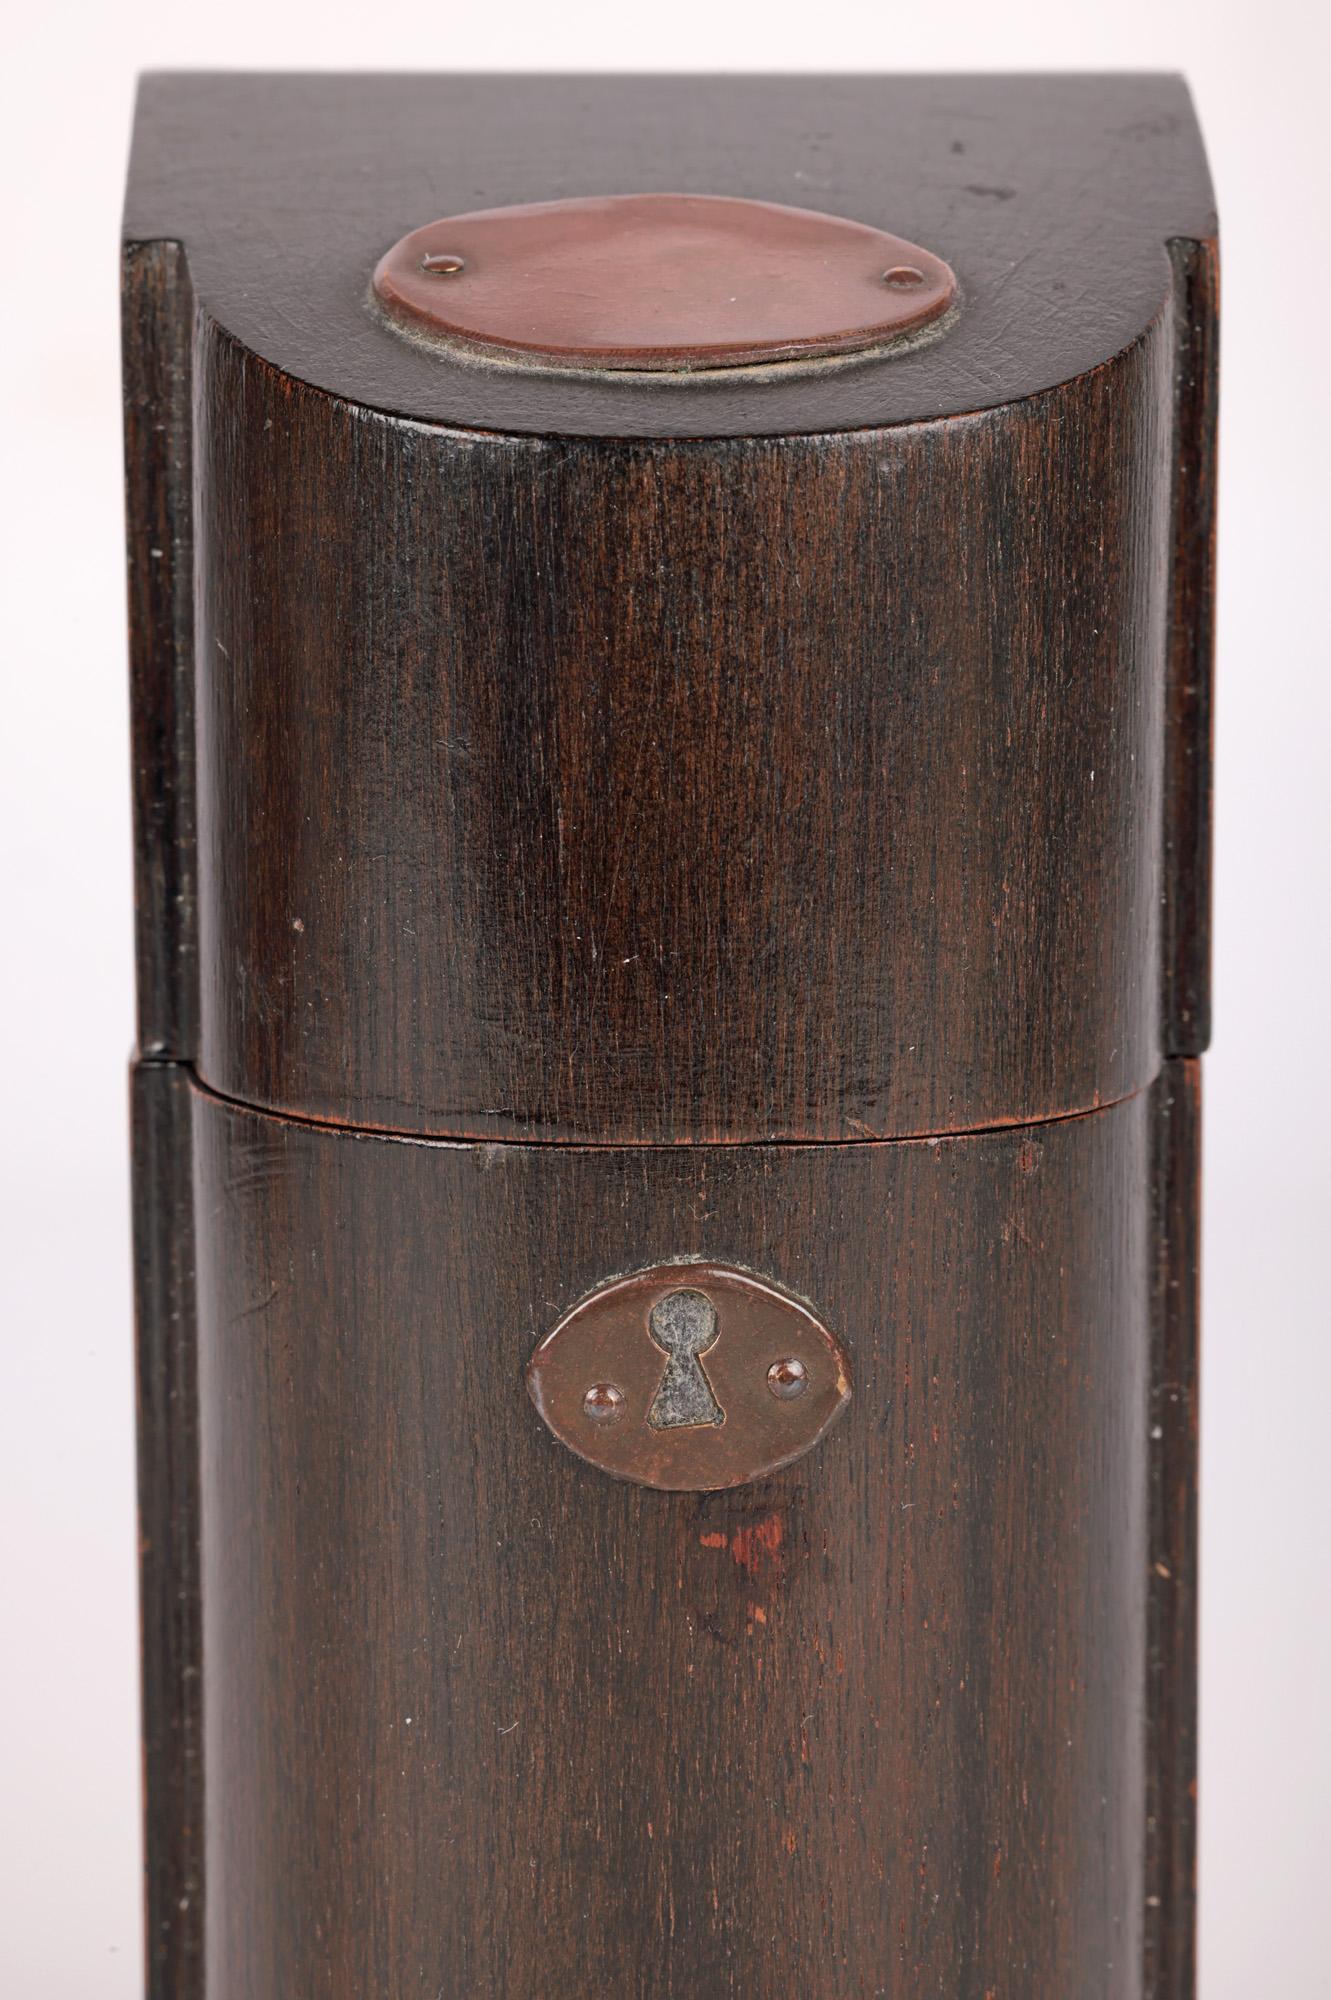 Ein ungewöhnliches und stilvolles britisch-viktorianisches Tintenfass in Form eines hölzernen Messerkastens aus dem 19. Jahrhundert. Die aus Mahagoni handgefertigte Schachtel hat eine hohe Form mit einer geblähten runden Vorderseite und flach